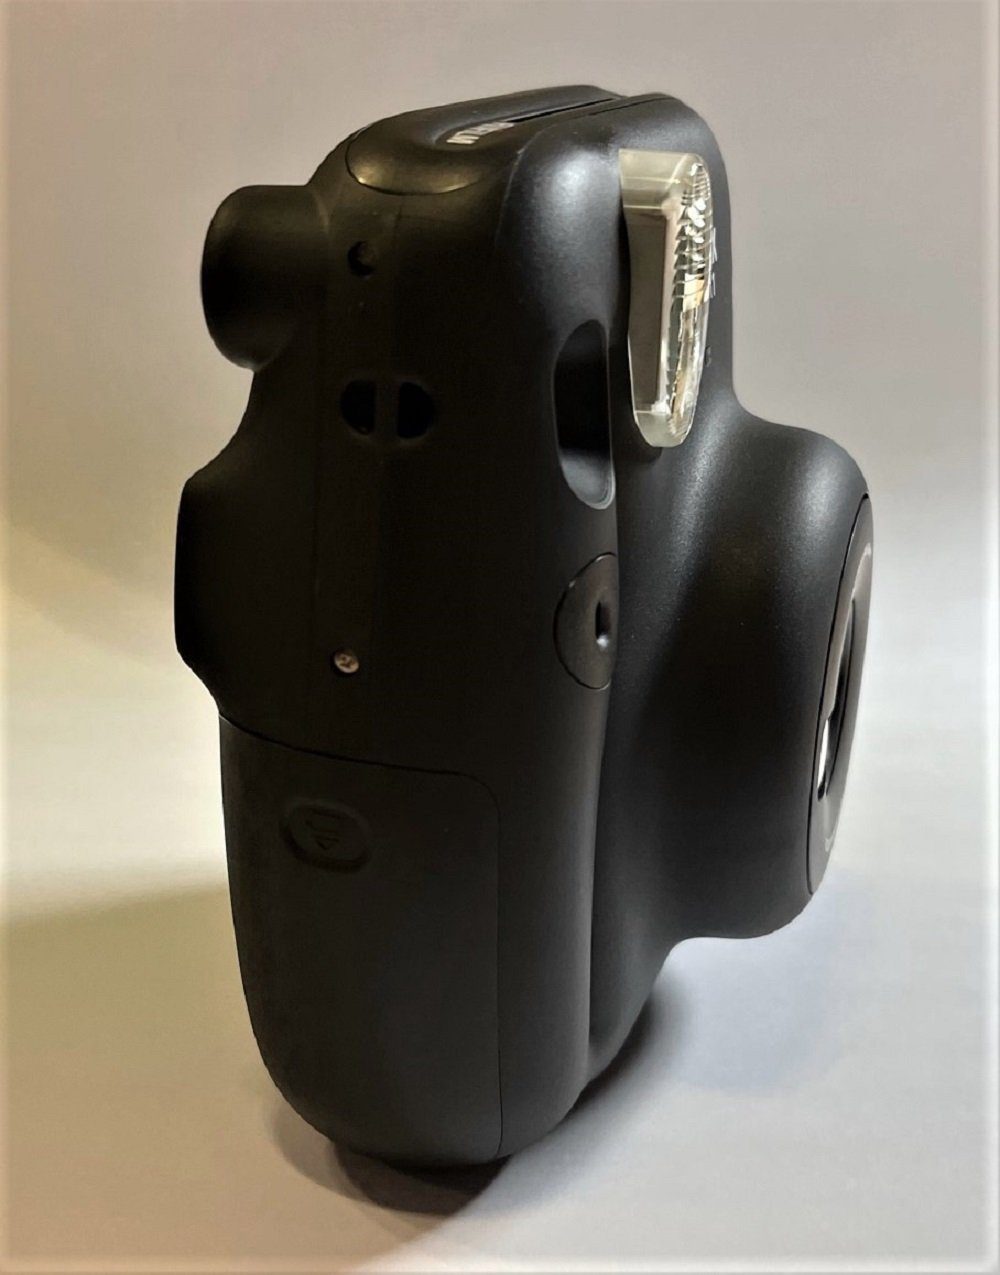 FUJIFILM 11 Mini Instax mit Sofortbildkamera Film Charcoal-Gray Aufnahmen inklusive 10